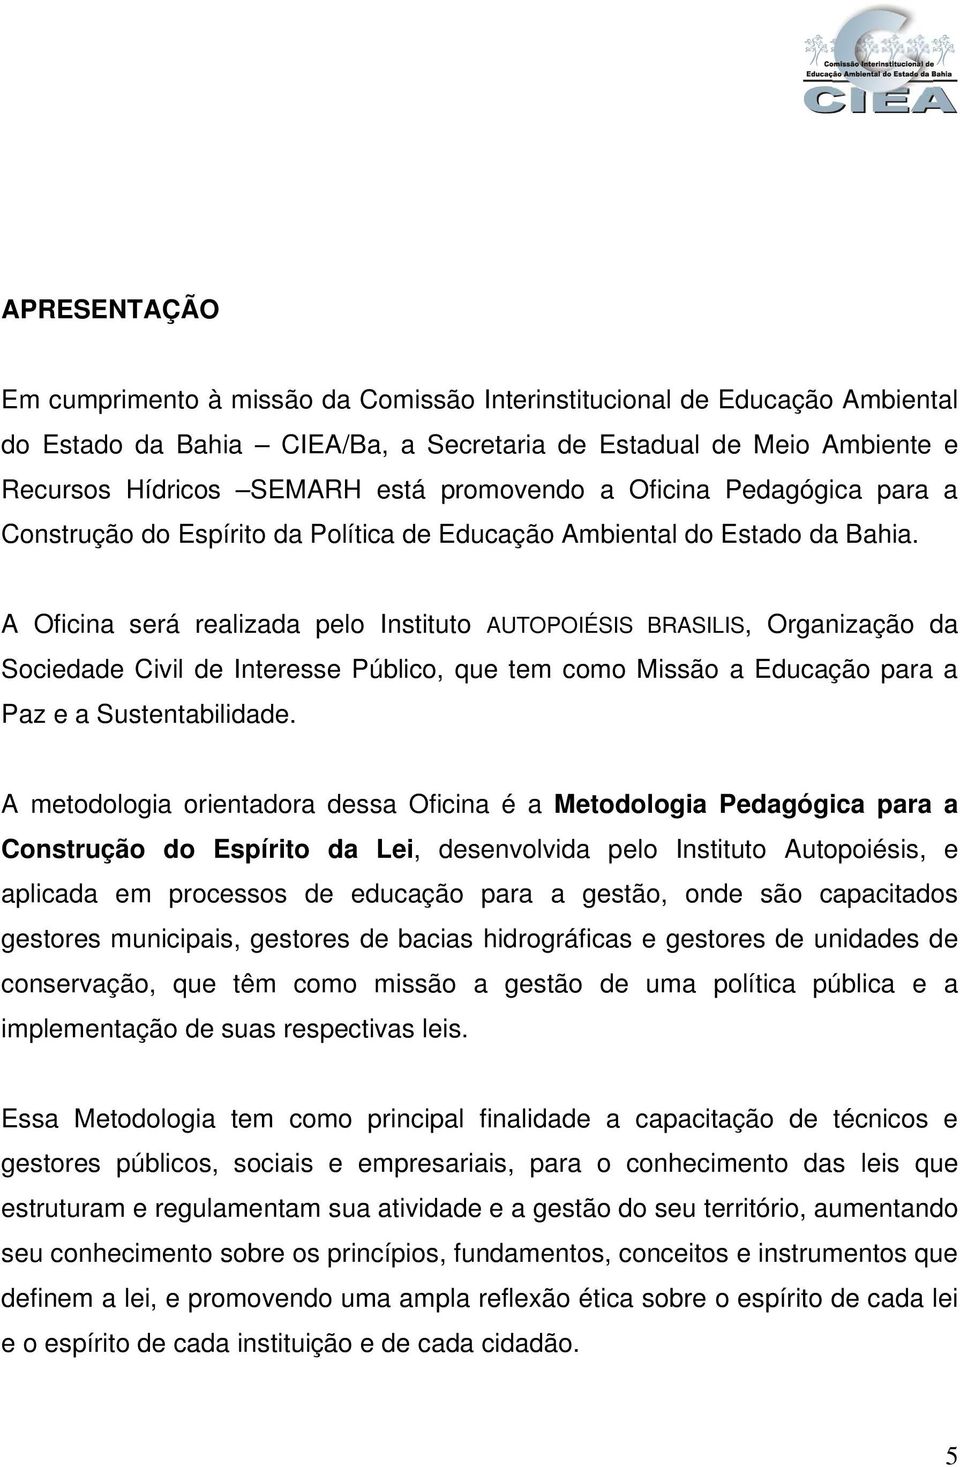 A Oficina será realizada pelo Instituto AUTOPOIÉSIS BRASILIS, Organização da Sociedade Civil de Interesse Público, que tem como Missão a Educação para a Paz e a Sustentabilidade.